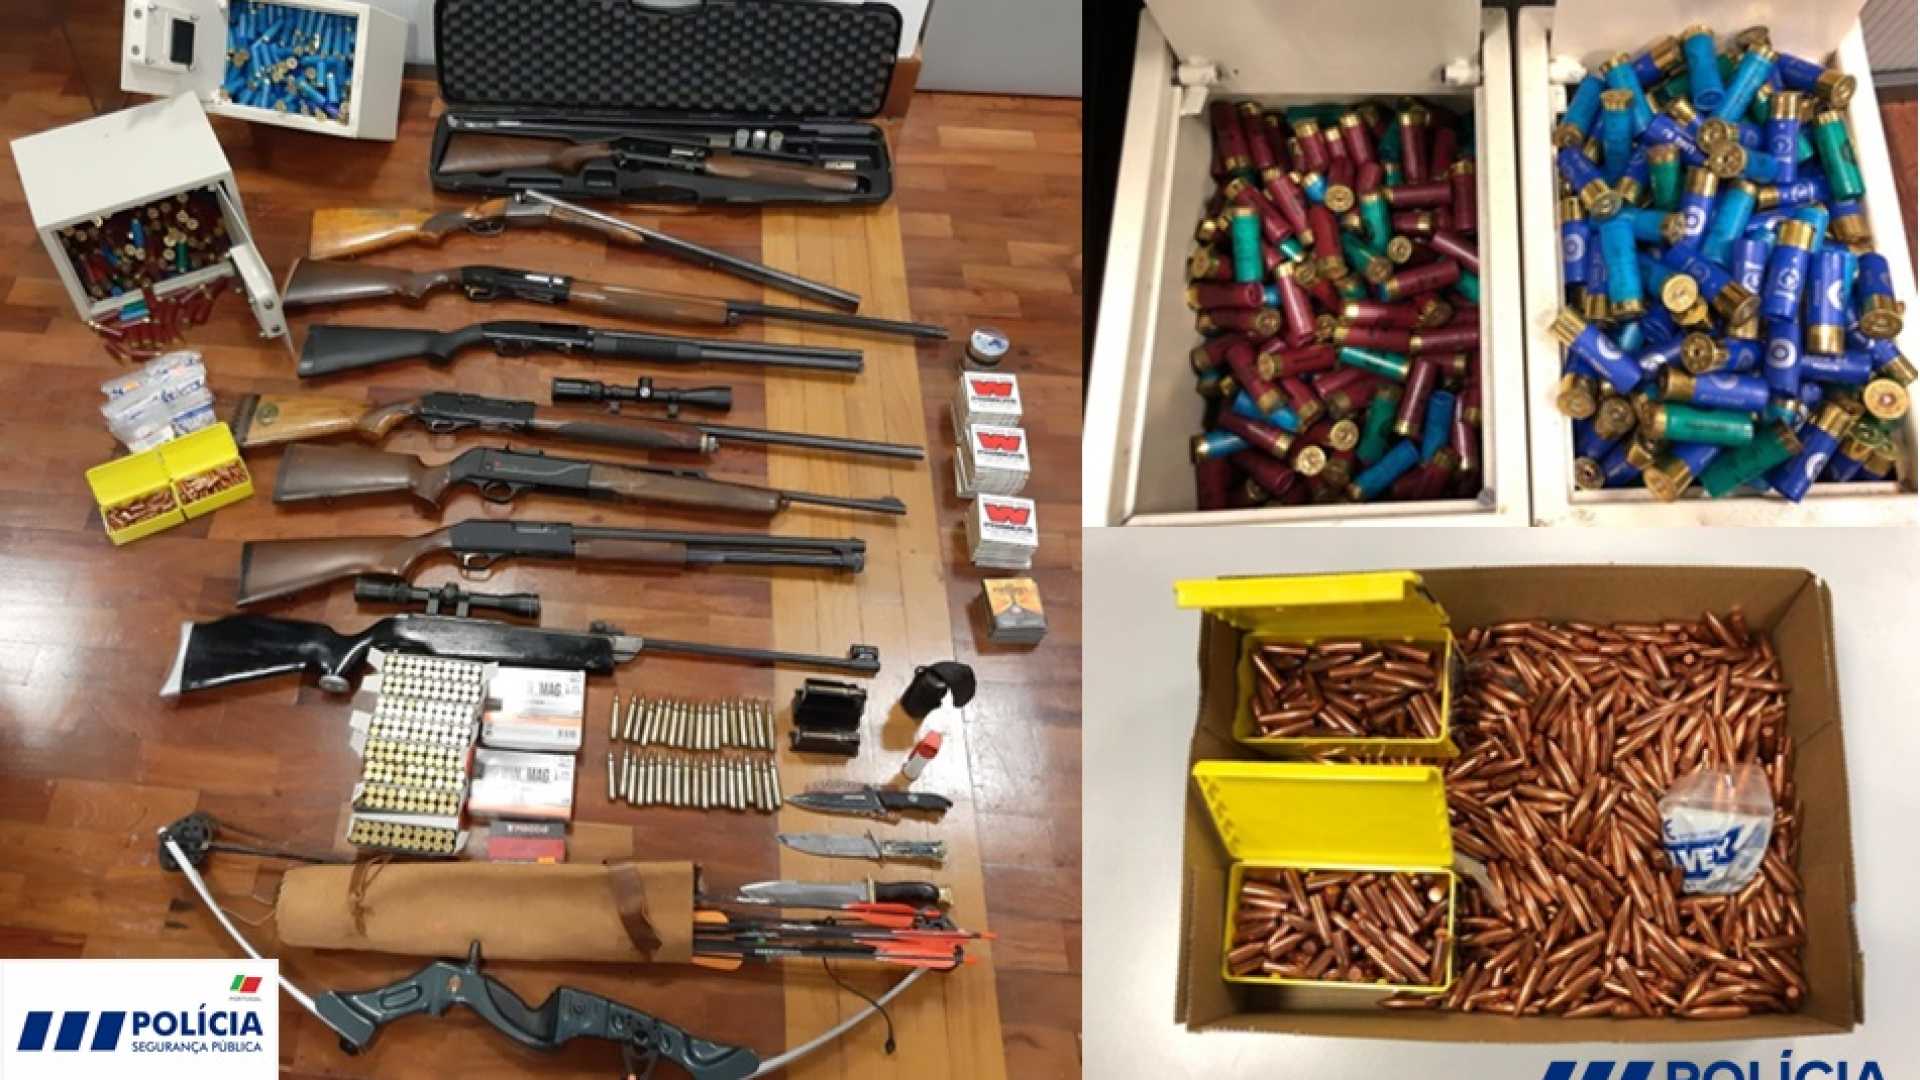 PSP apreende dezenas de armas durante mandado de detenção de suspeito de volência doméstica